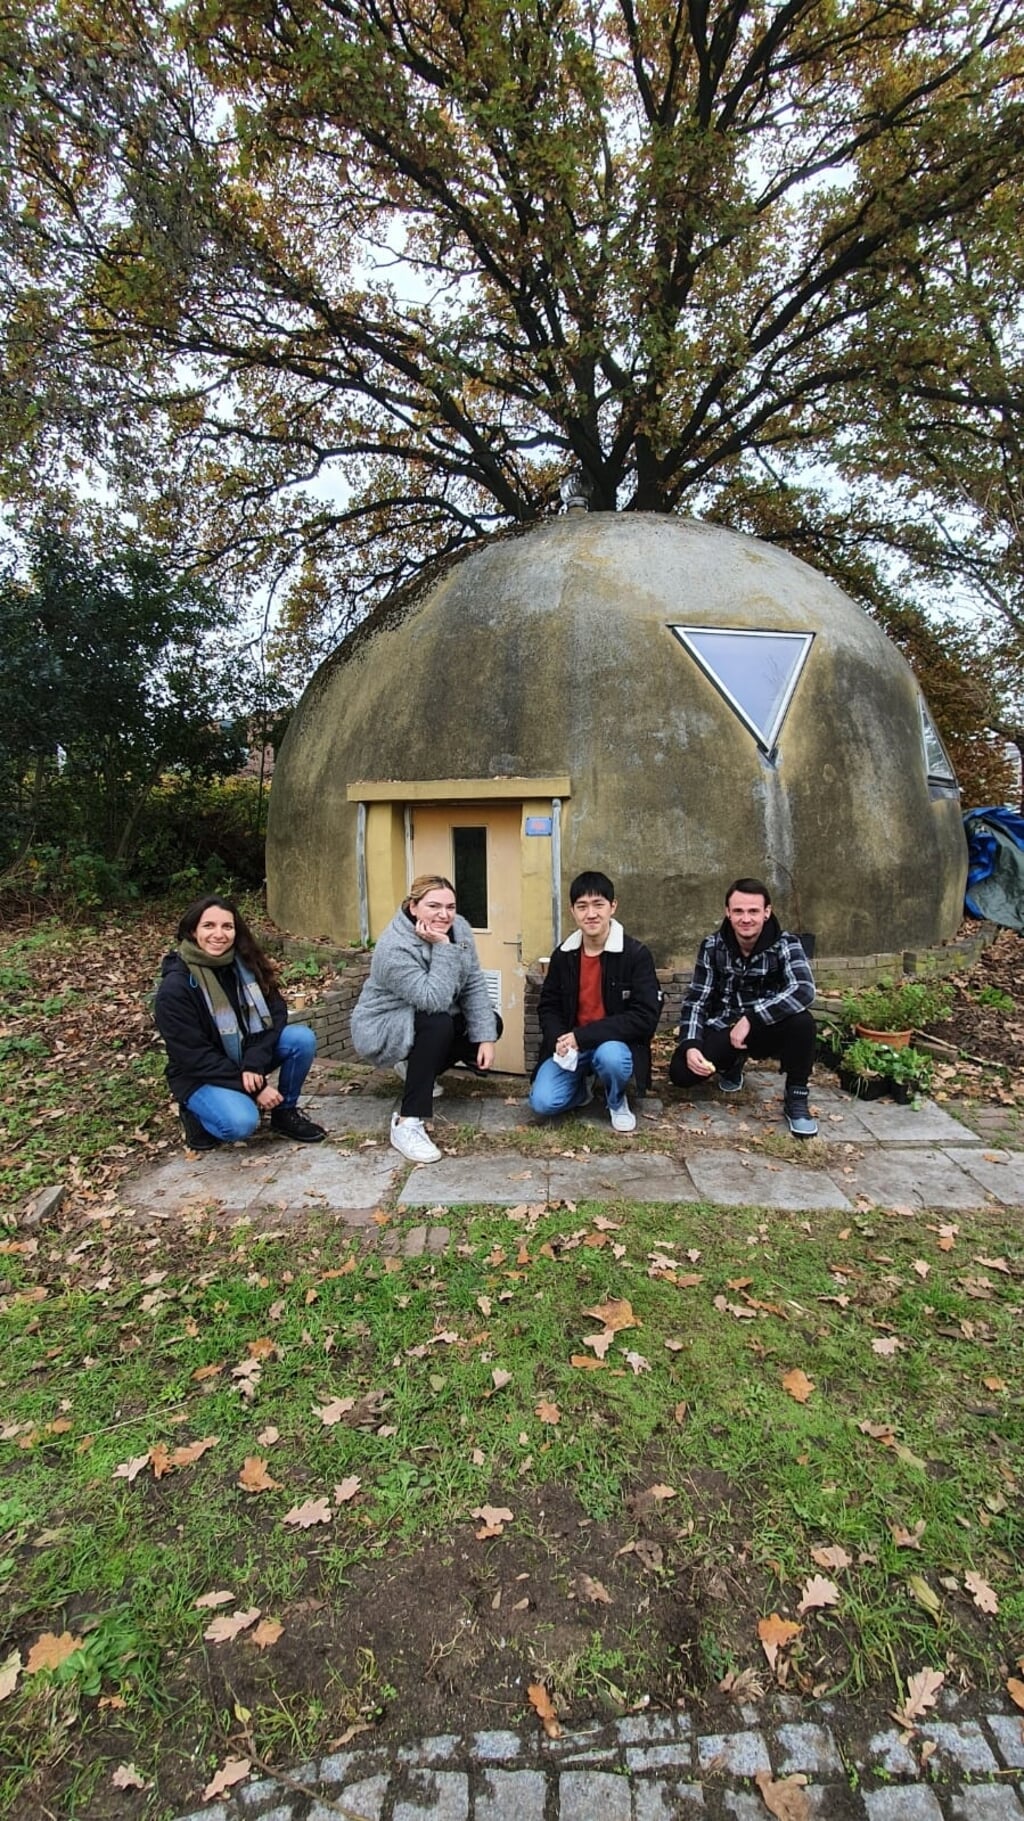 Kamelia, Simona, Yuming en Seanan (van links naar rechts) poseren voor de bolwoning van De Kleine Aarde. De vier studenten hebben tijdens een onderzoek alle toekomstige functies van het kringloophuis in kaart gebracht. (Foto: Katja Staring)